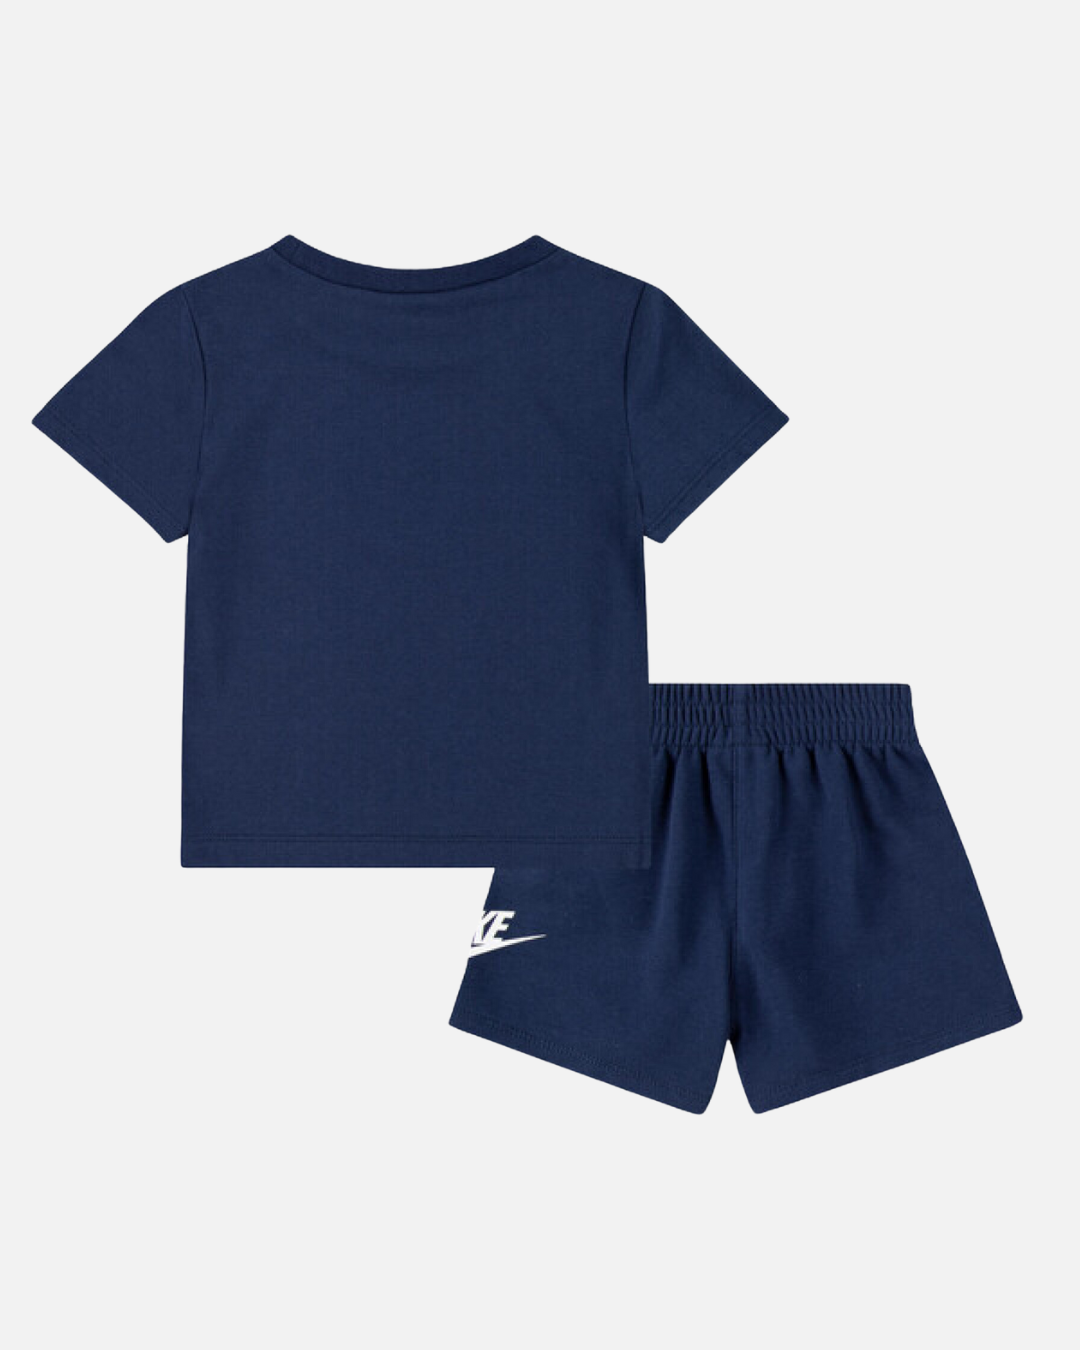 Nike Baby-T-Shirt/Shorts-Set – Blau